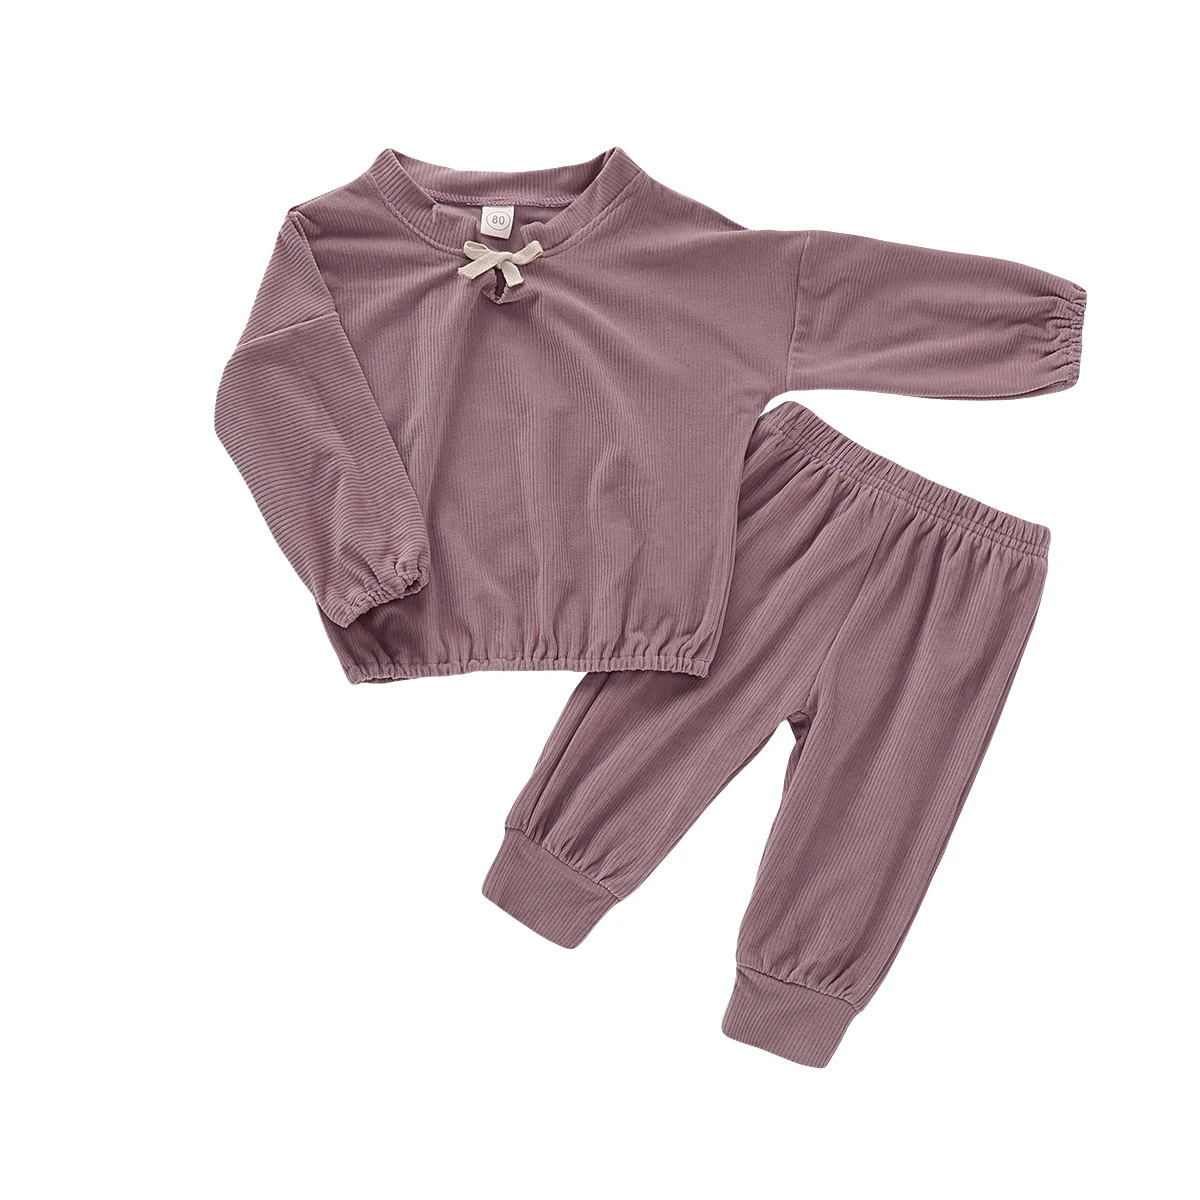 Г. Весенне-осенняя одежда для малышей Вельветовая одежда для маленьких девочек, свитер Топ, штаны, спортивный костюм комплект однотонной одежды, От 1 до 5 лет - Цвет: Розовый